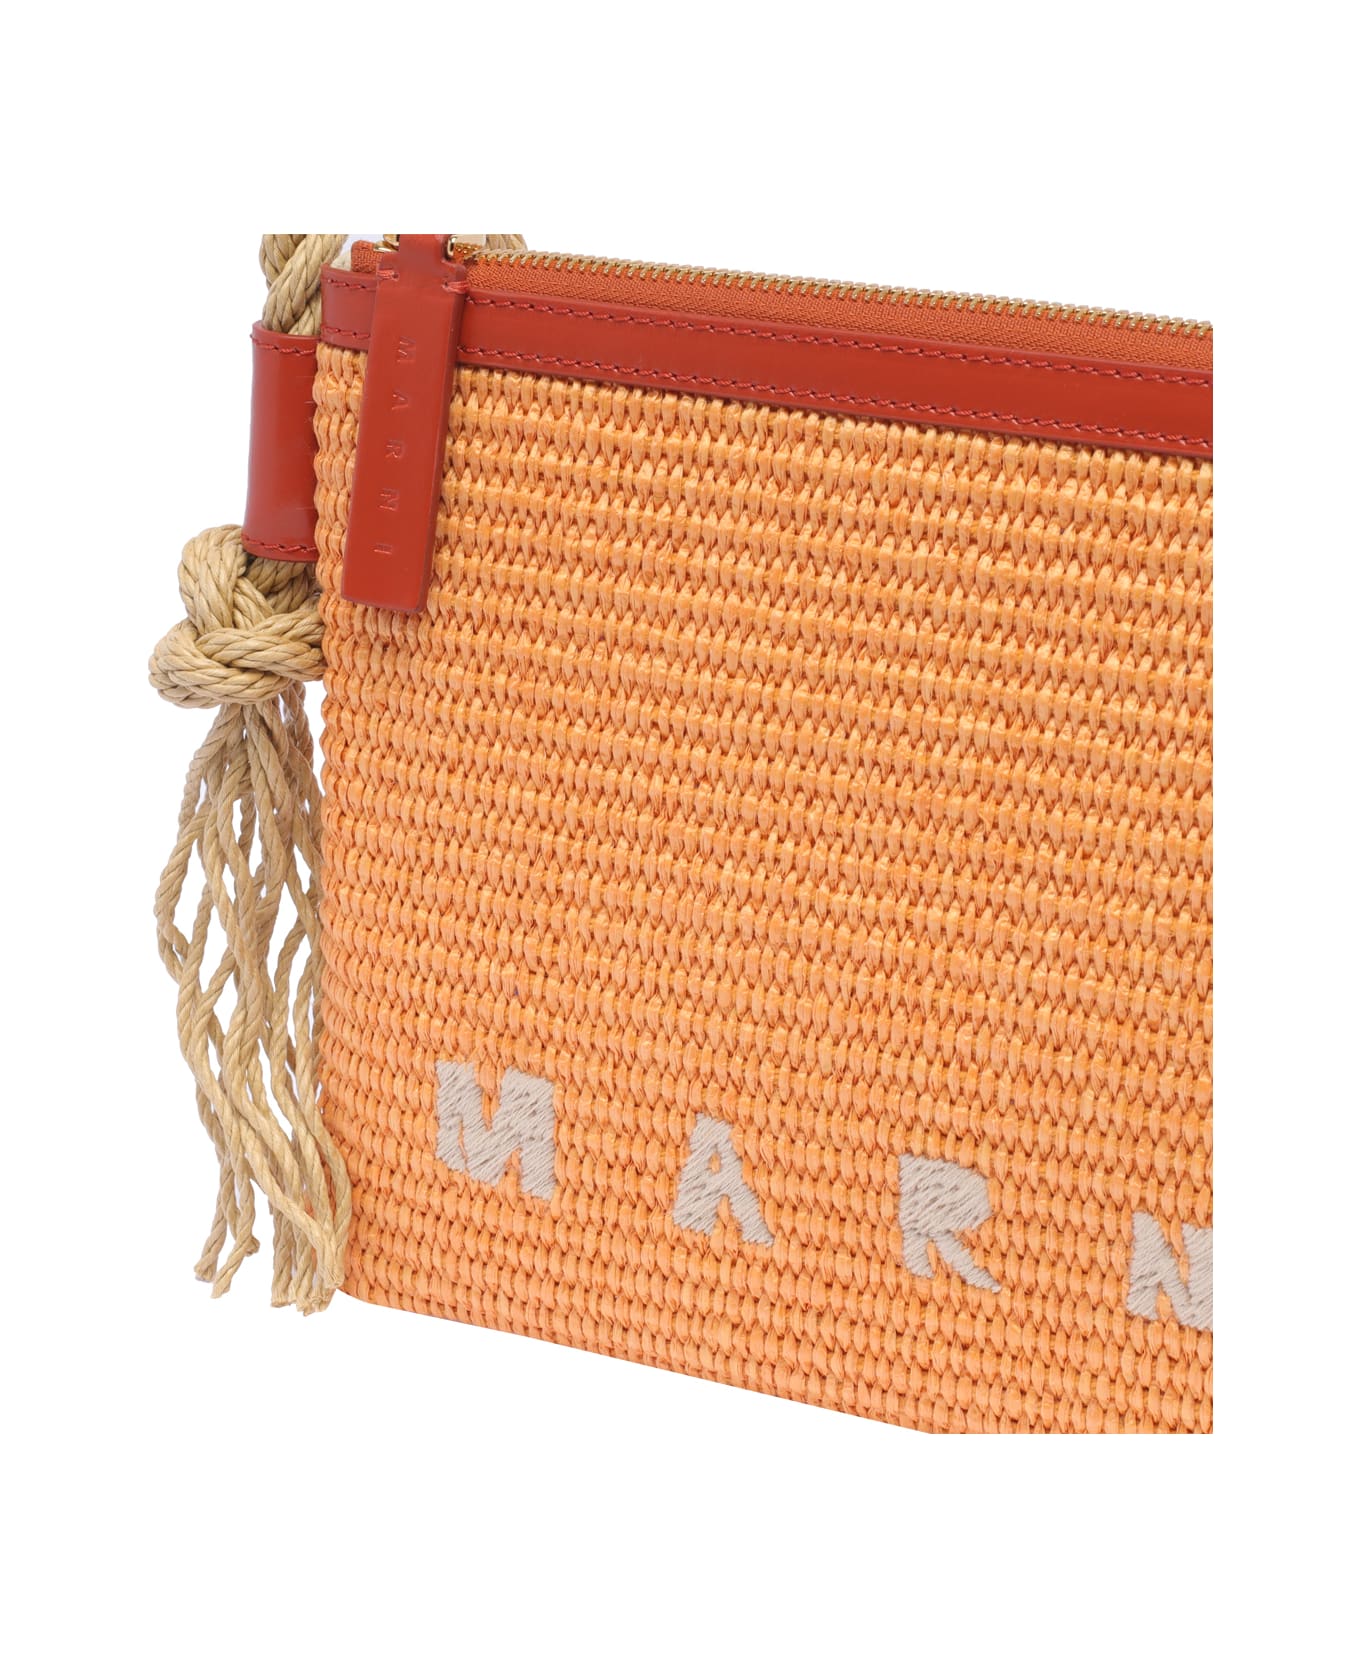 Marni Marcel Summer Bag - Orange